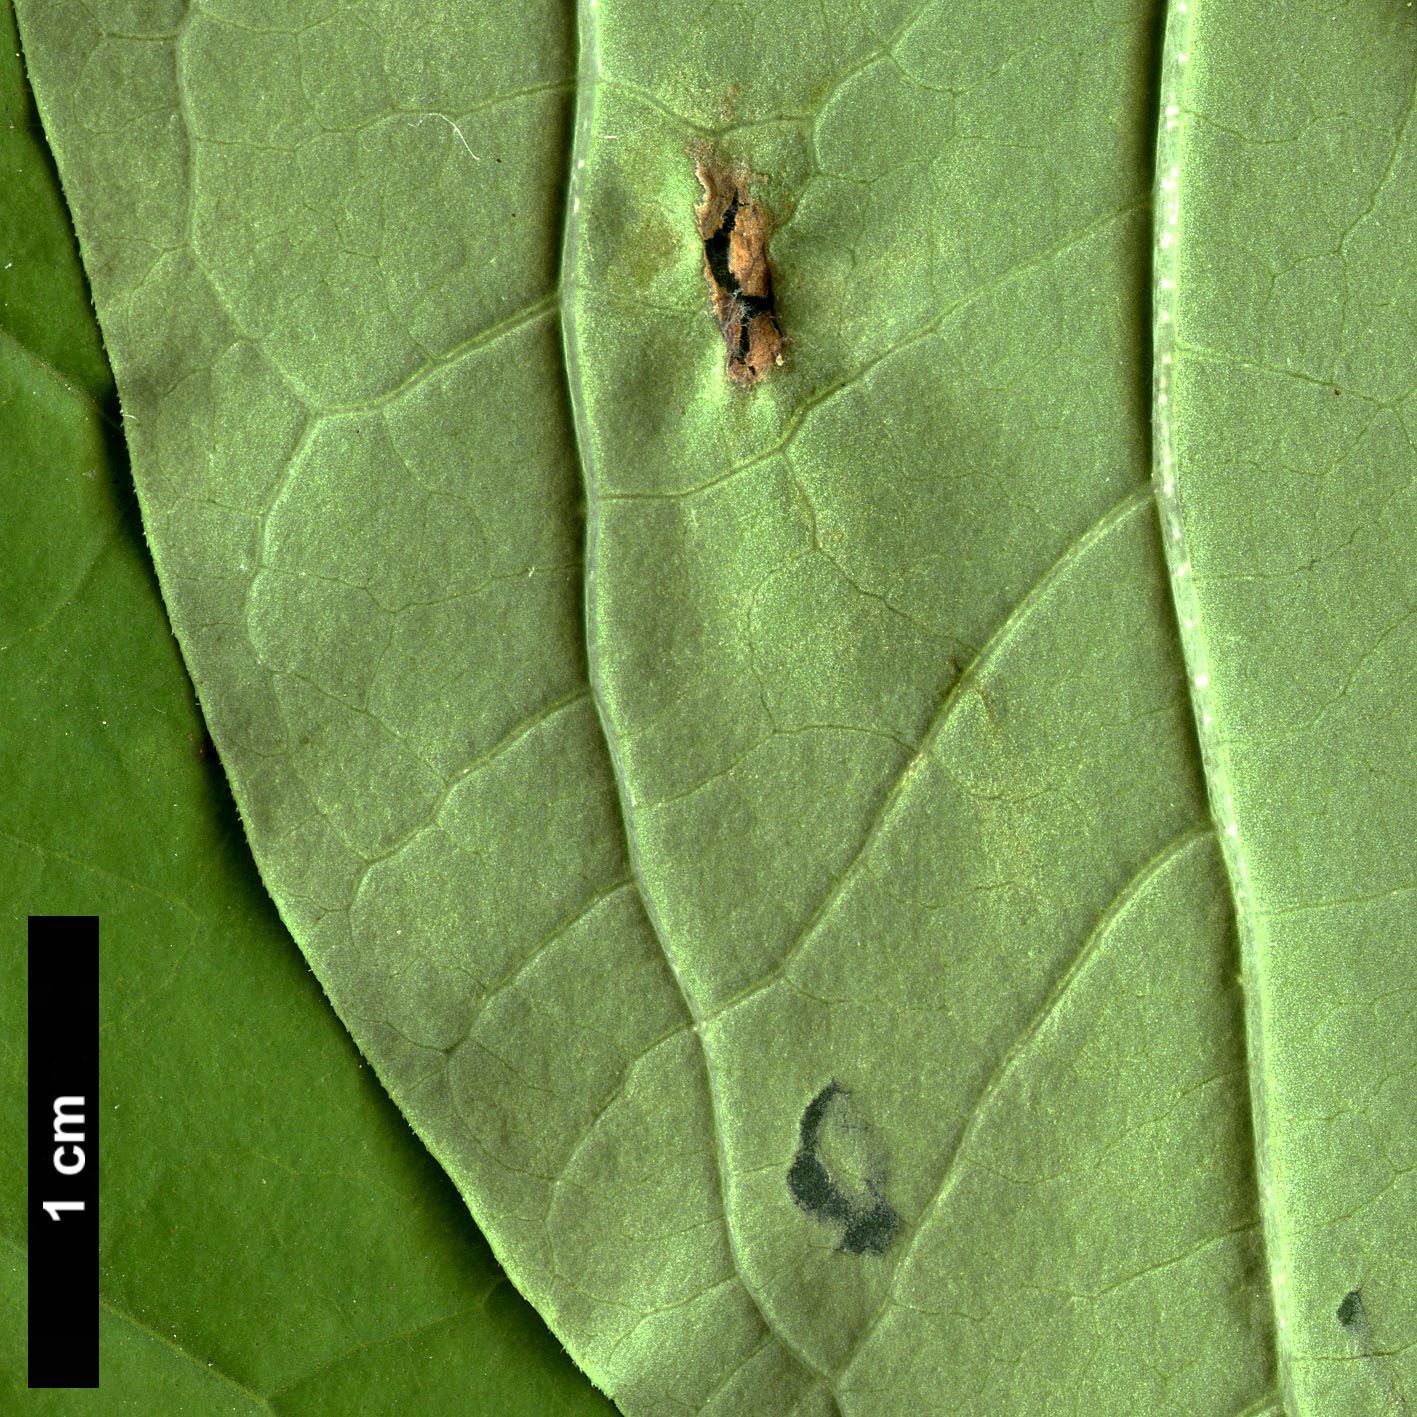 High resolution image: Family: Oleaceae - Genus: Syringa - Taxon: emodi